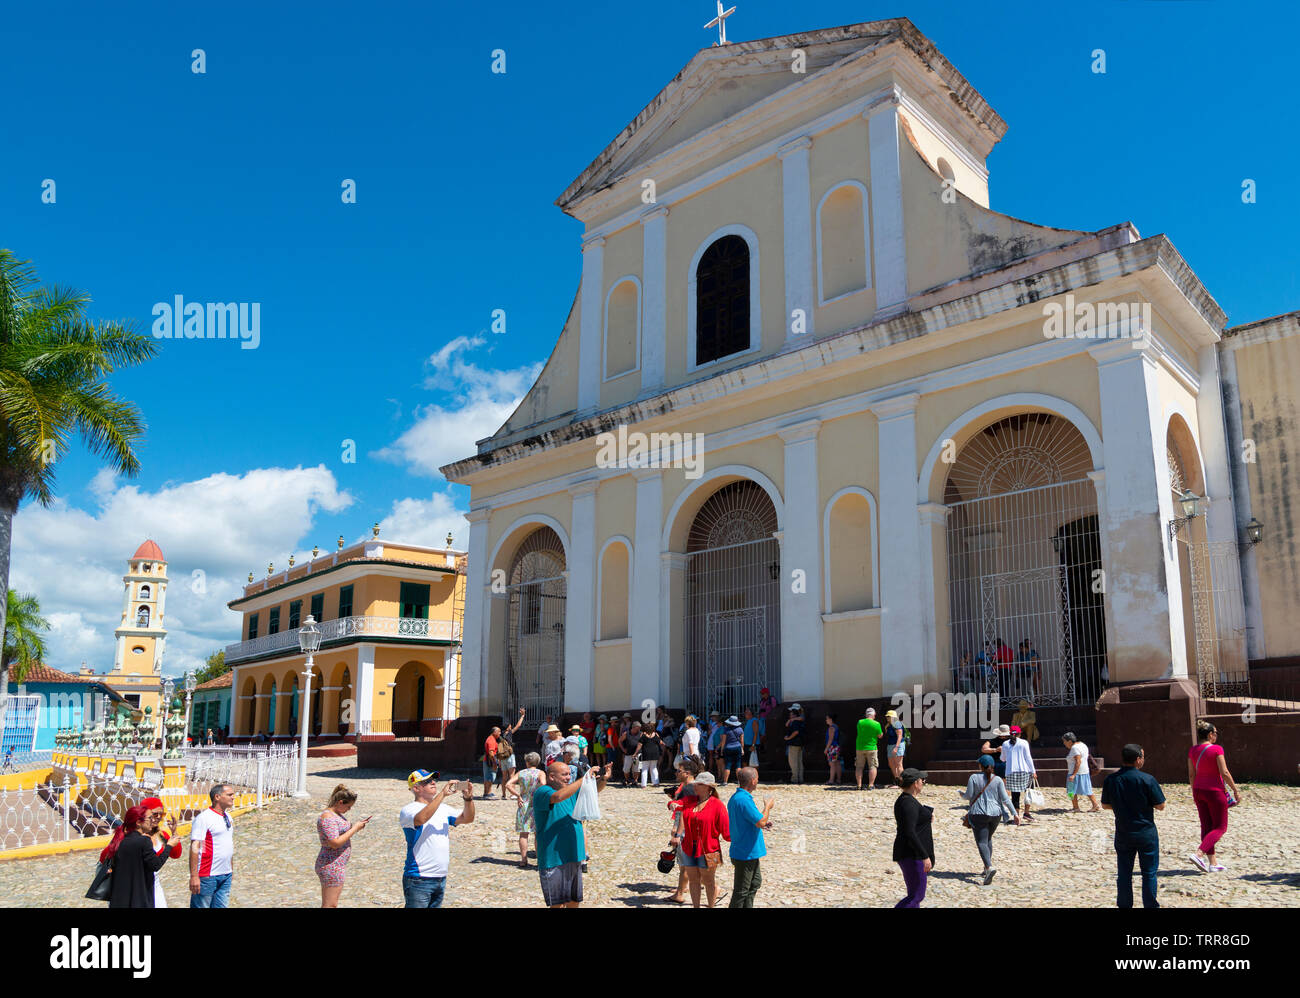 Les touristes à l'extérieur de l'église de la Sainte Trinité ou église Santisima, Plaza Mayor, Trinidad, la province de Sancti Spiritus, Cuba, Caraïbes Banque D'Images